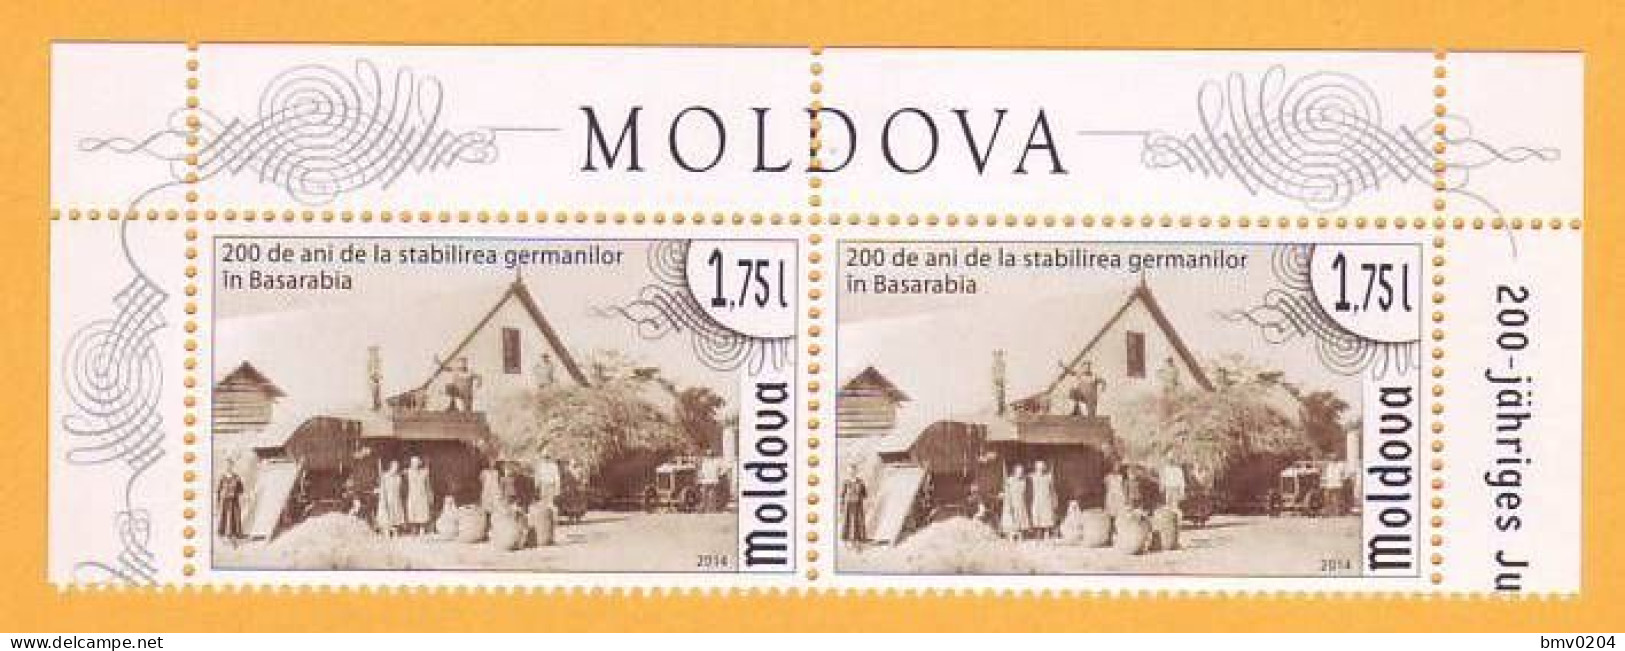 2014 Moldova Moldavie Moldau 200 Years Of Germans In Basarabia Bessarabia. Germany 2v Mint - Moldavie